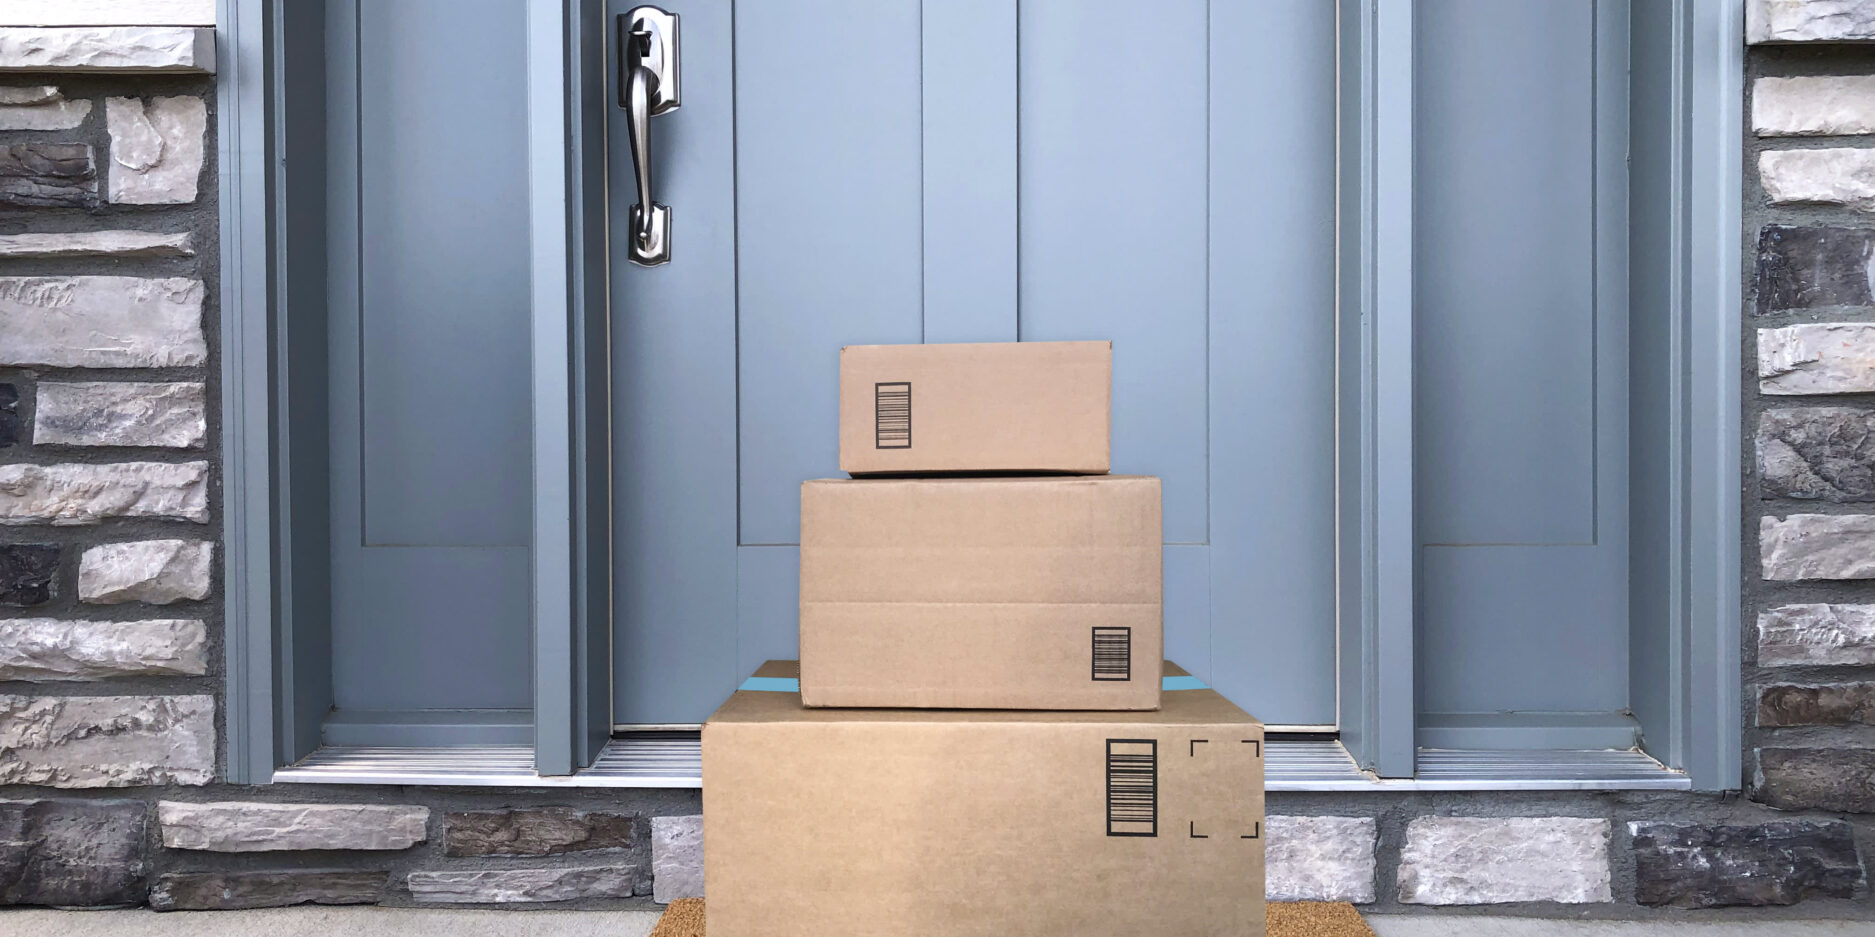 packages at door